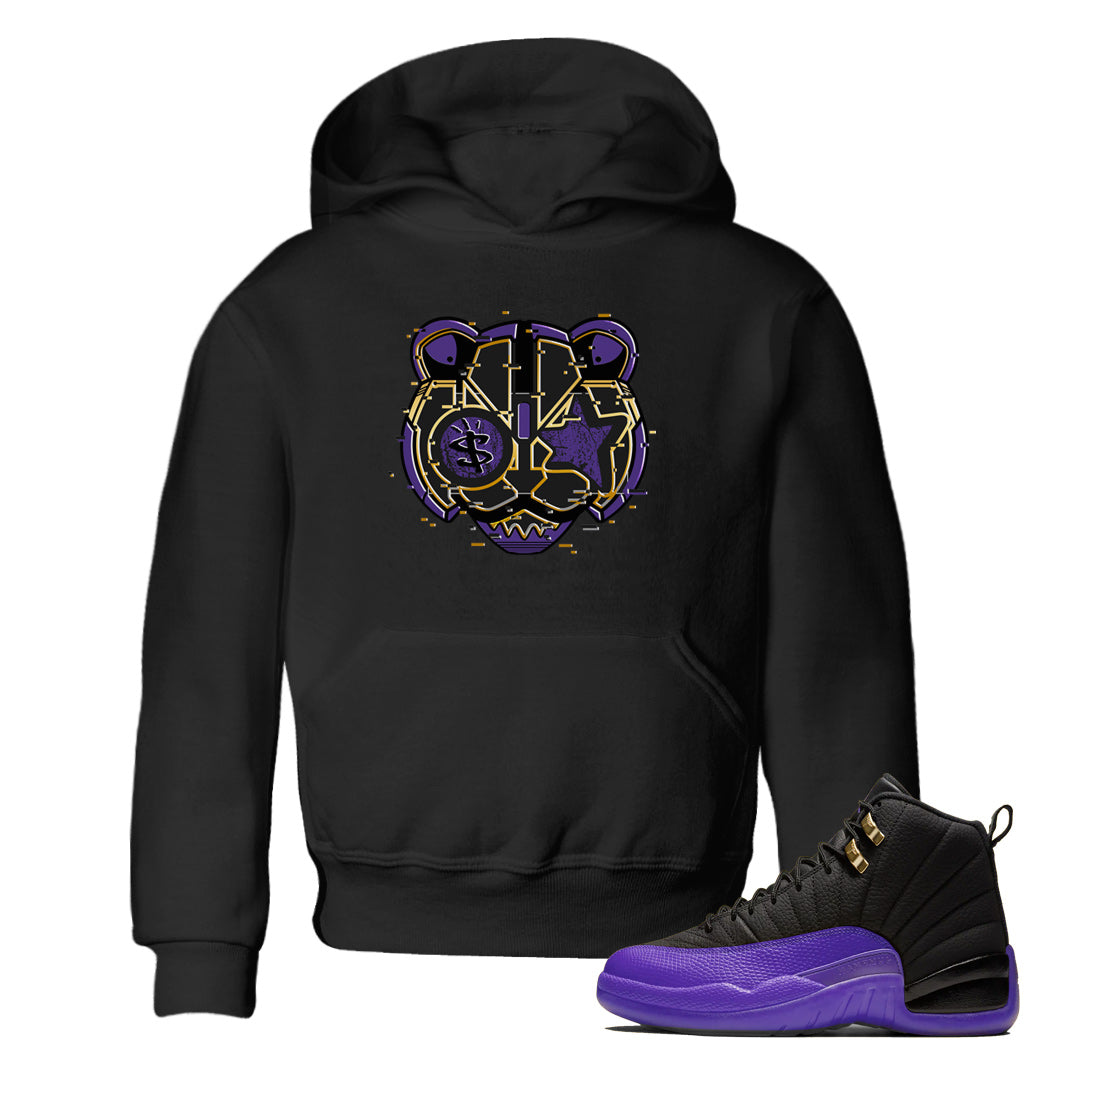 Air Jordan 12 Field Purple Sneaker Match Tees Digital Cat Face Sneaker Tees 12s Field Purple Sneaker Release Tees Kids Shirts Black 1